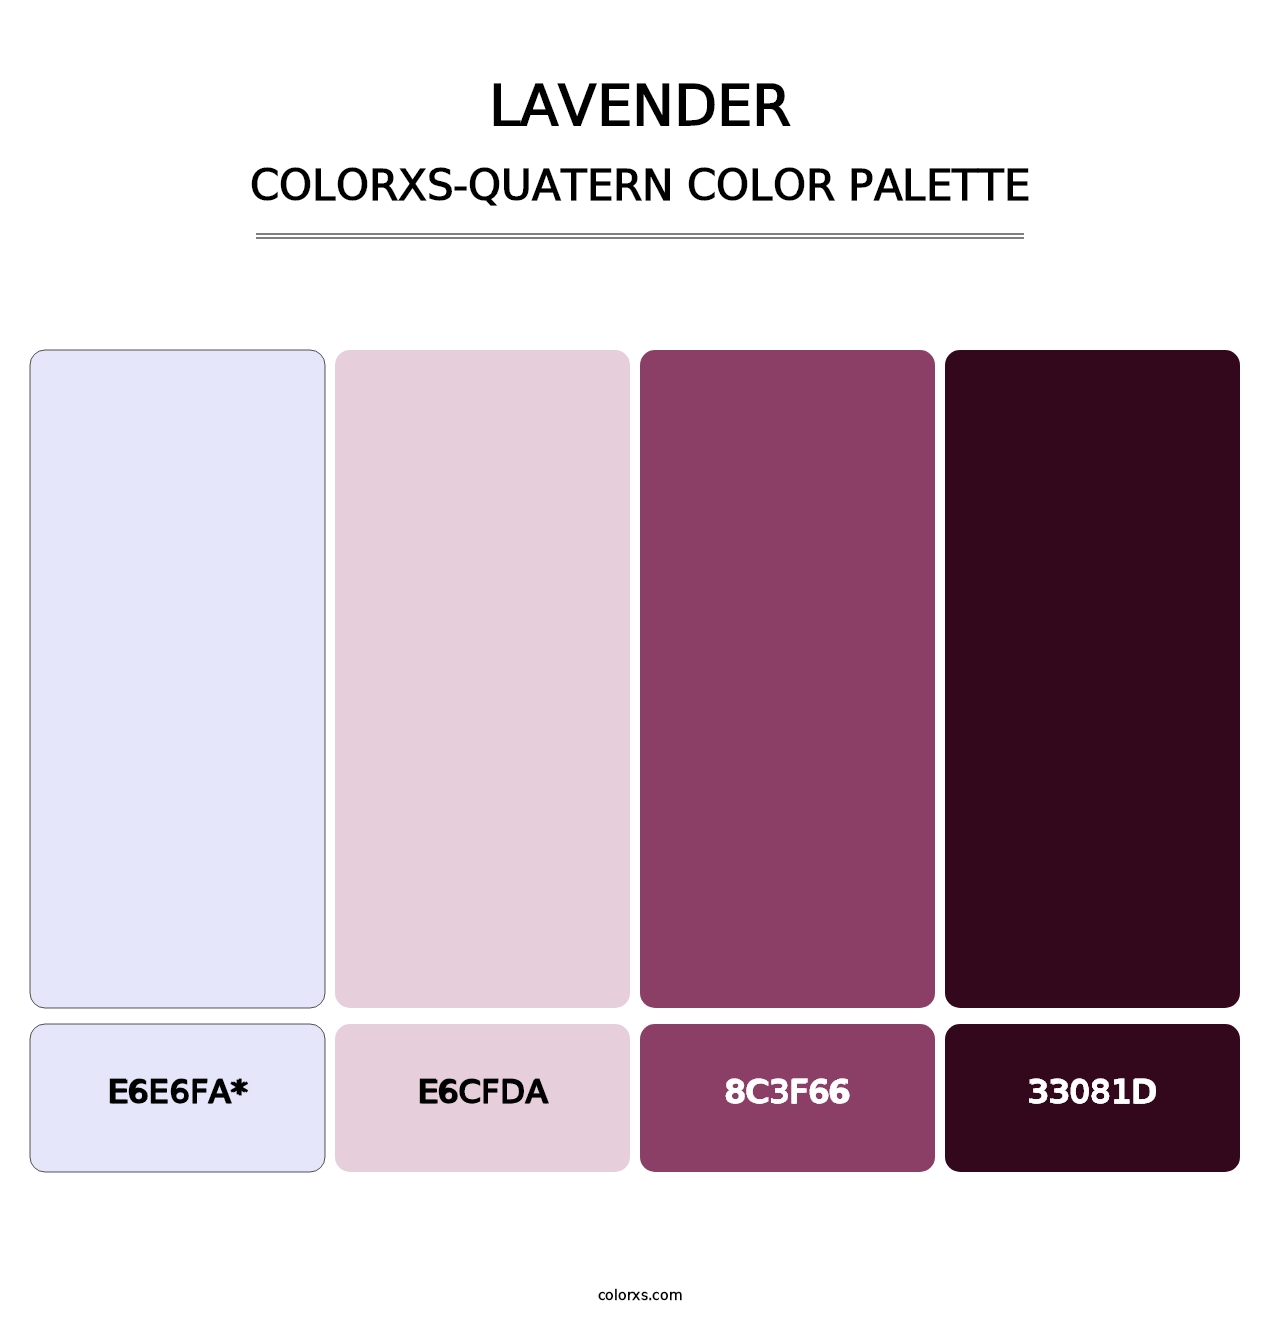 Lavender - Colorxs Quatern Palette